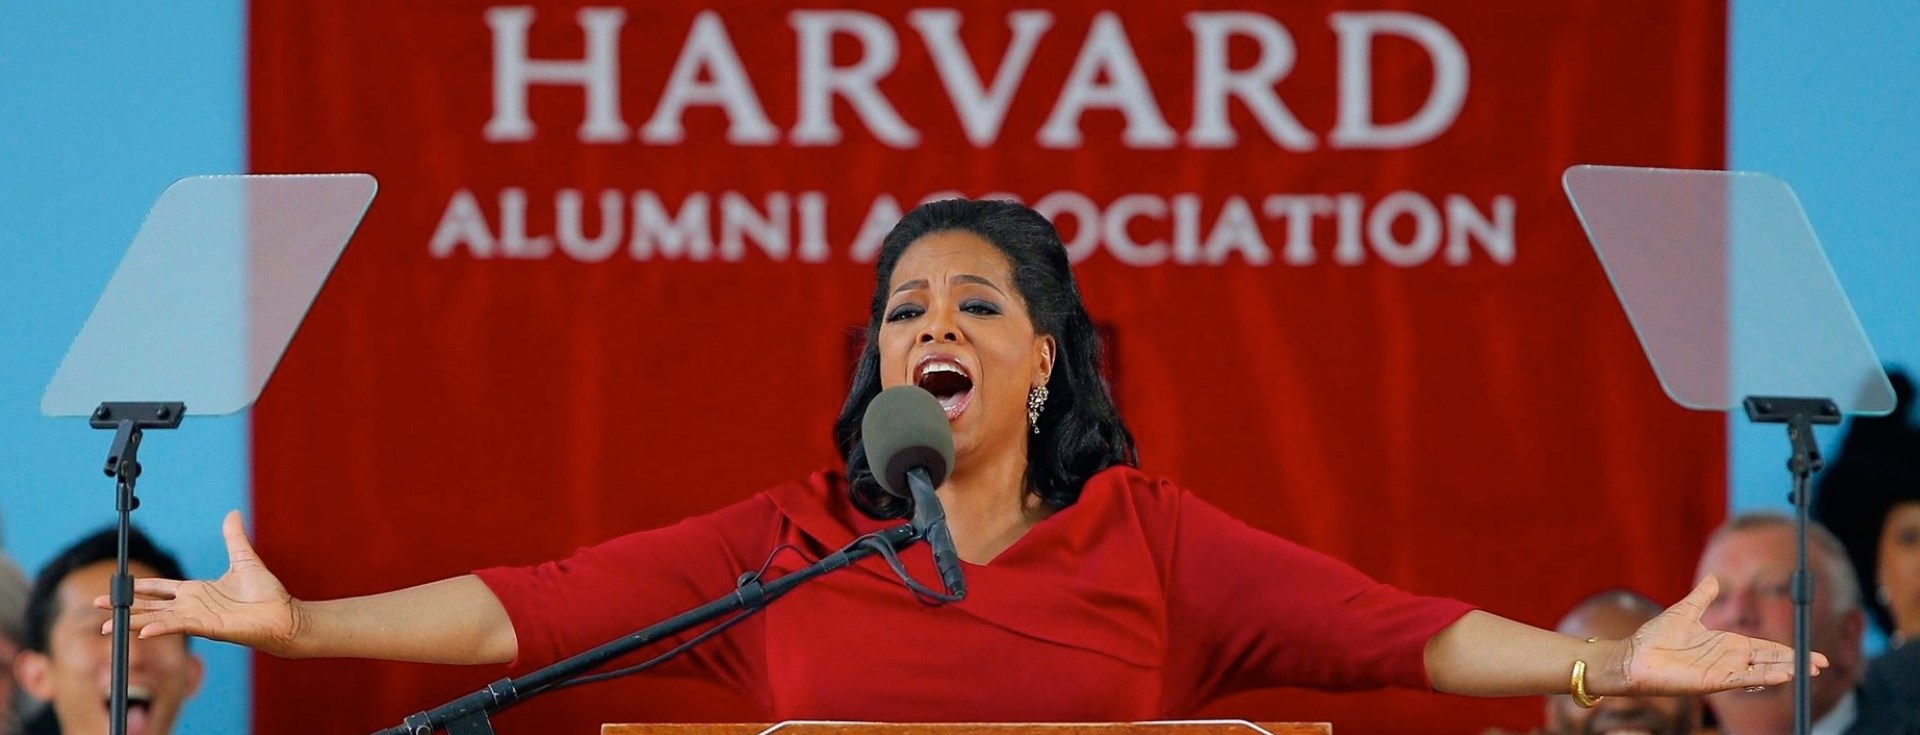 Oprah'a Göre Başarılı İnsanların Cevaplaması Gereken 4 Soru